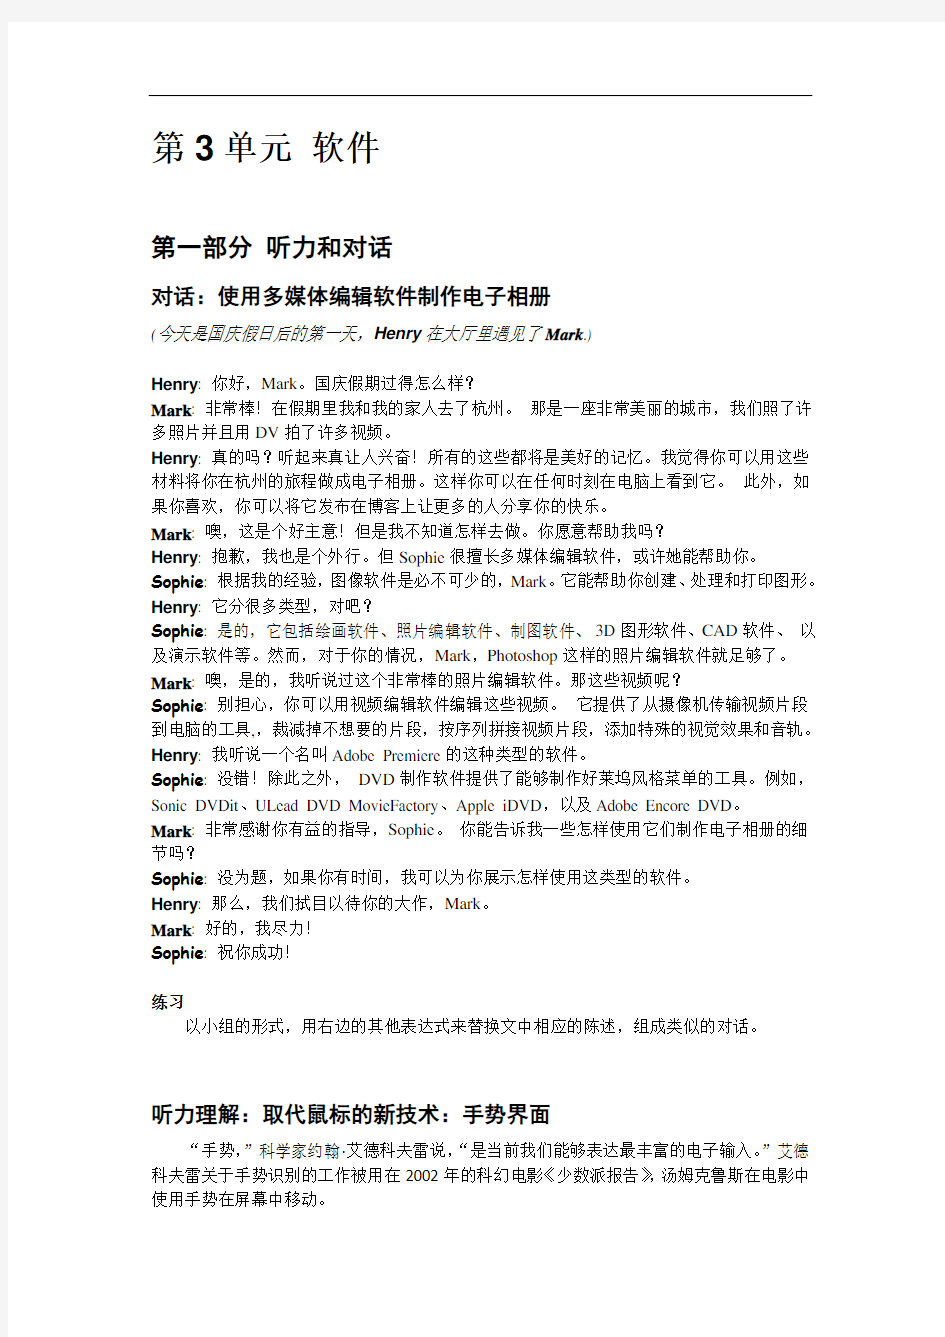 大学实用计算机英语教程第2版翻译机工版3_中文-1-1